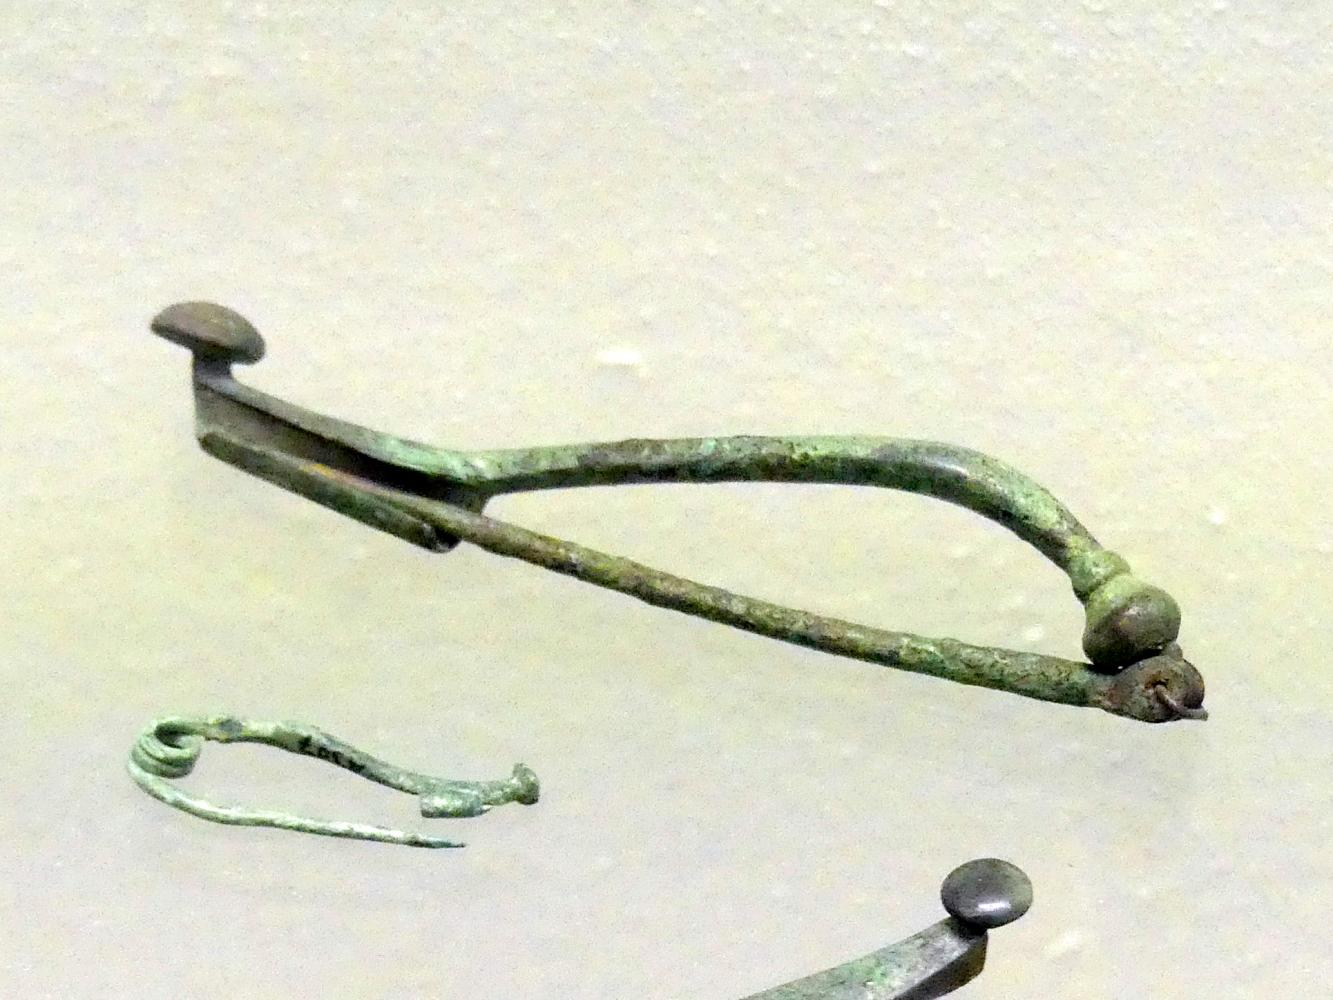 Gewandspange mit Fußknopf, Frühlatènezeit A, 700 - 100 v. Chr., Bild 1/2